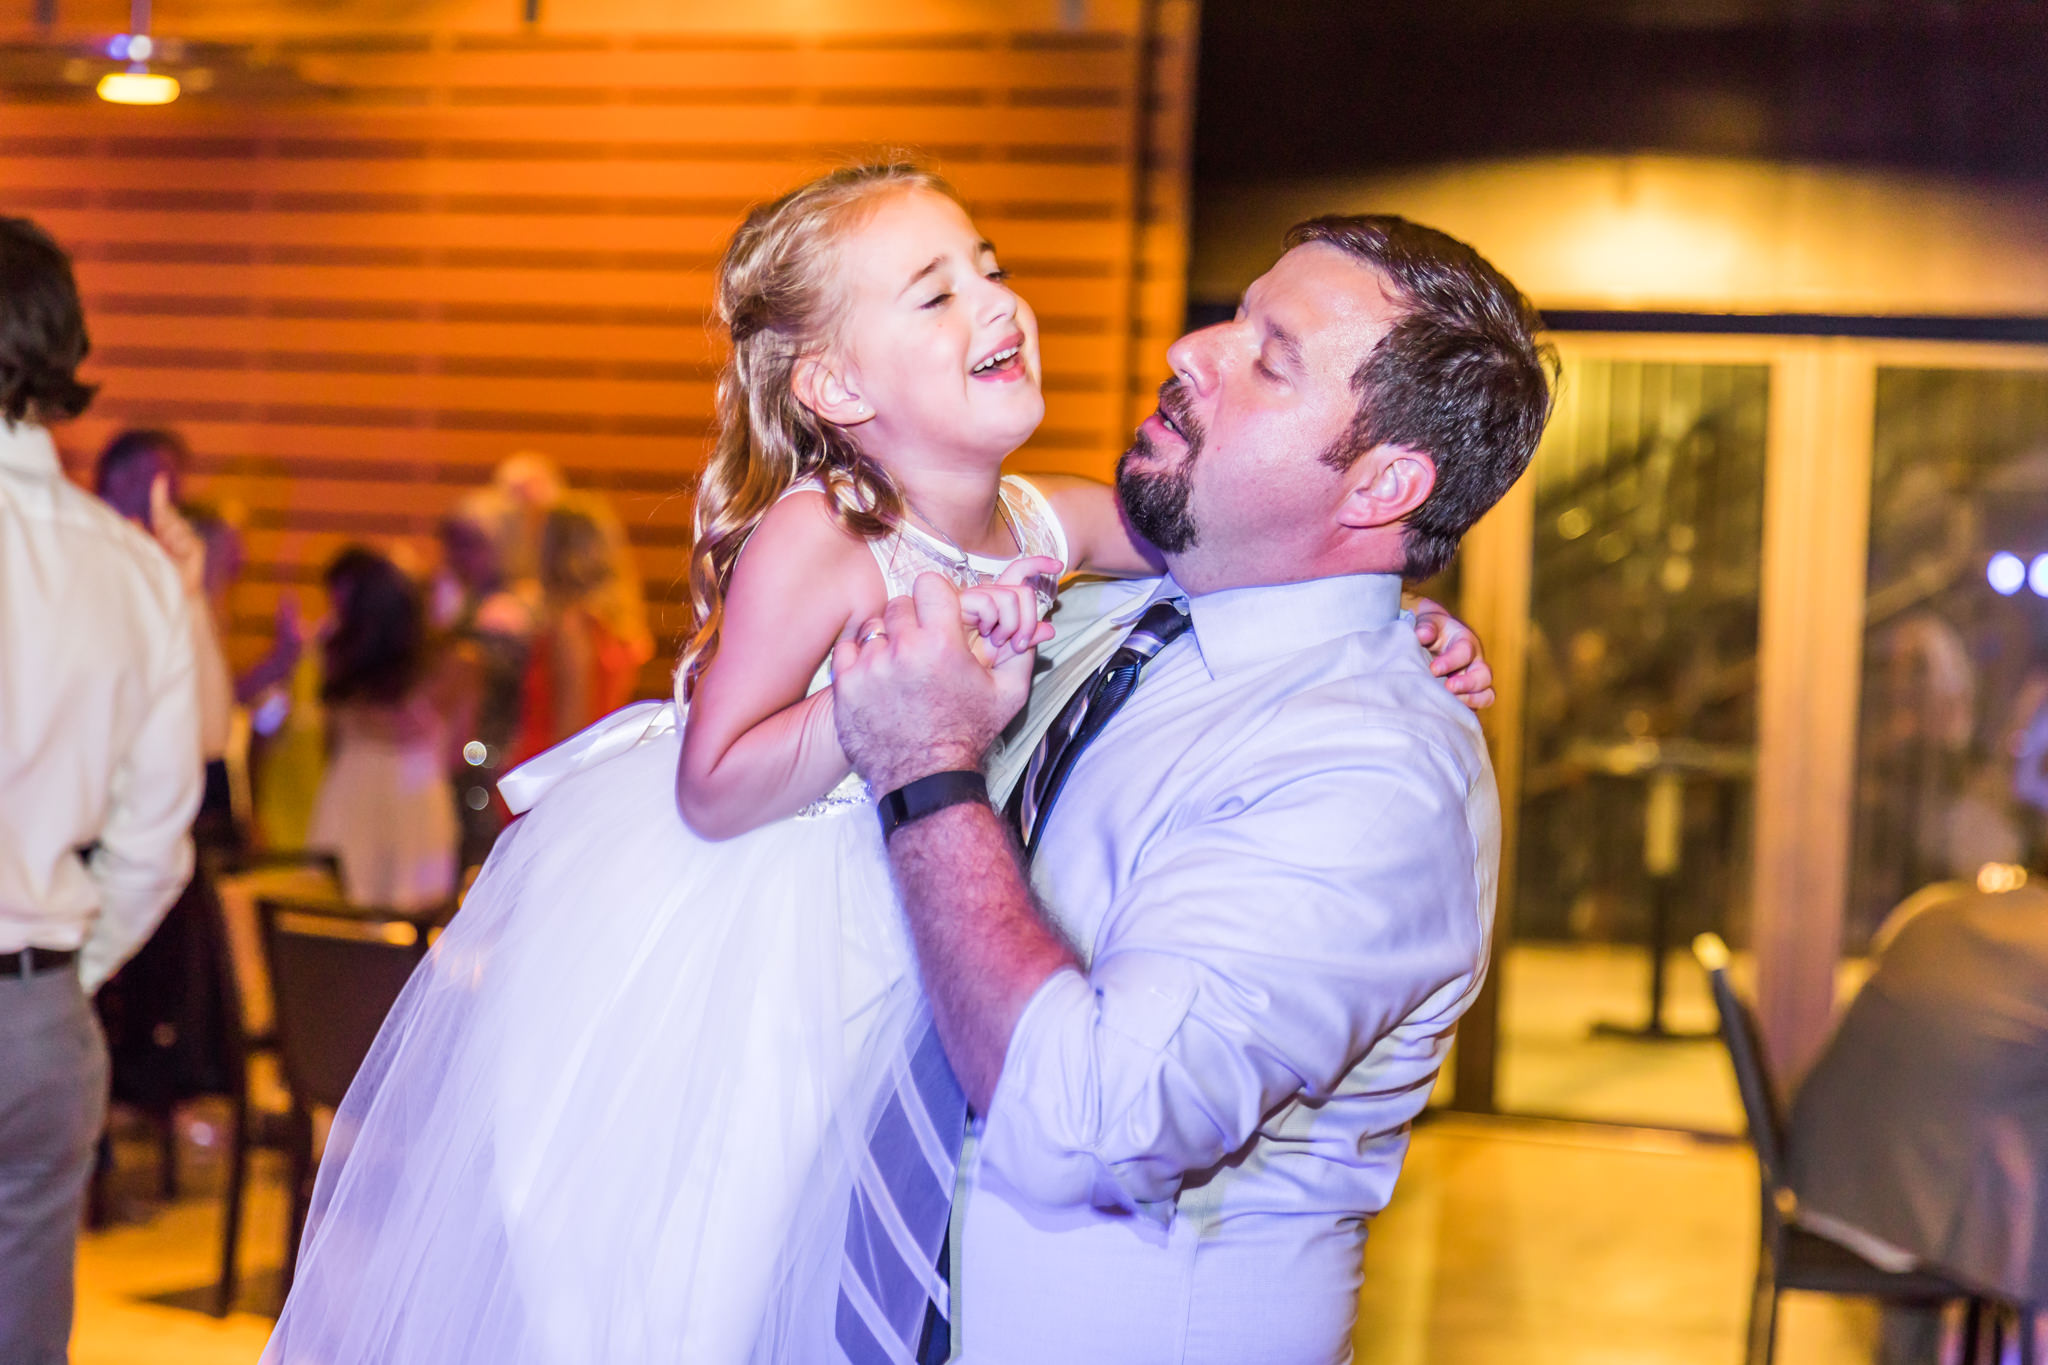 A Mint and Blush Summer Wedding at The Pearl Studio in San Antonio, TX by Dawn Elizabeth Studios, San Antonio Wedding Photographer